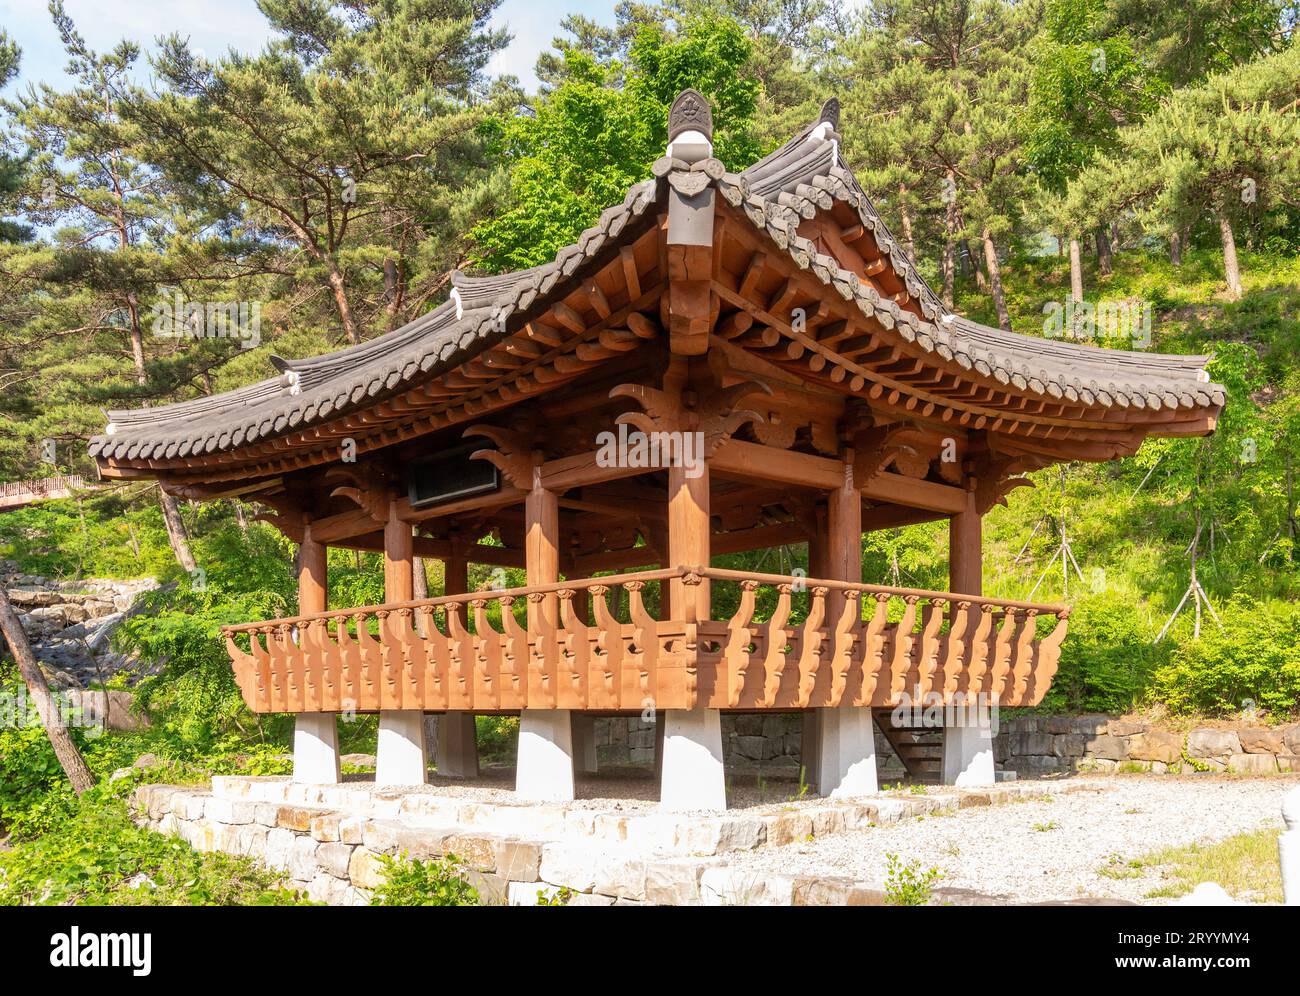 Koreanische Architektur - eine Holzpagode im traditionellen koreanischen Stil Stockfoto